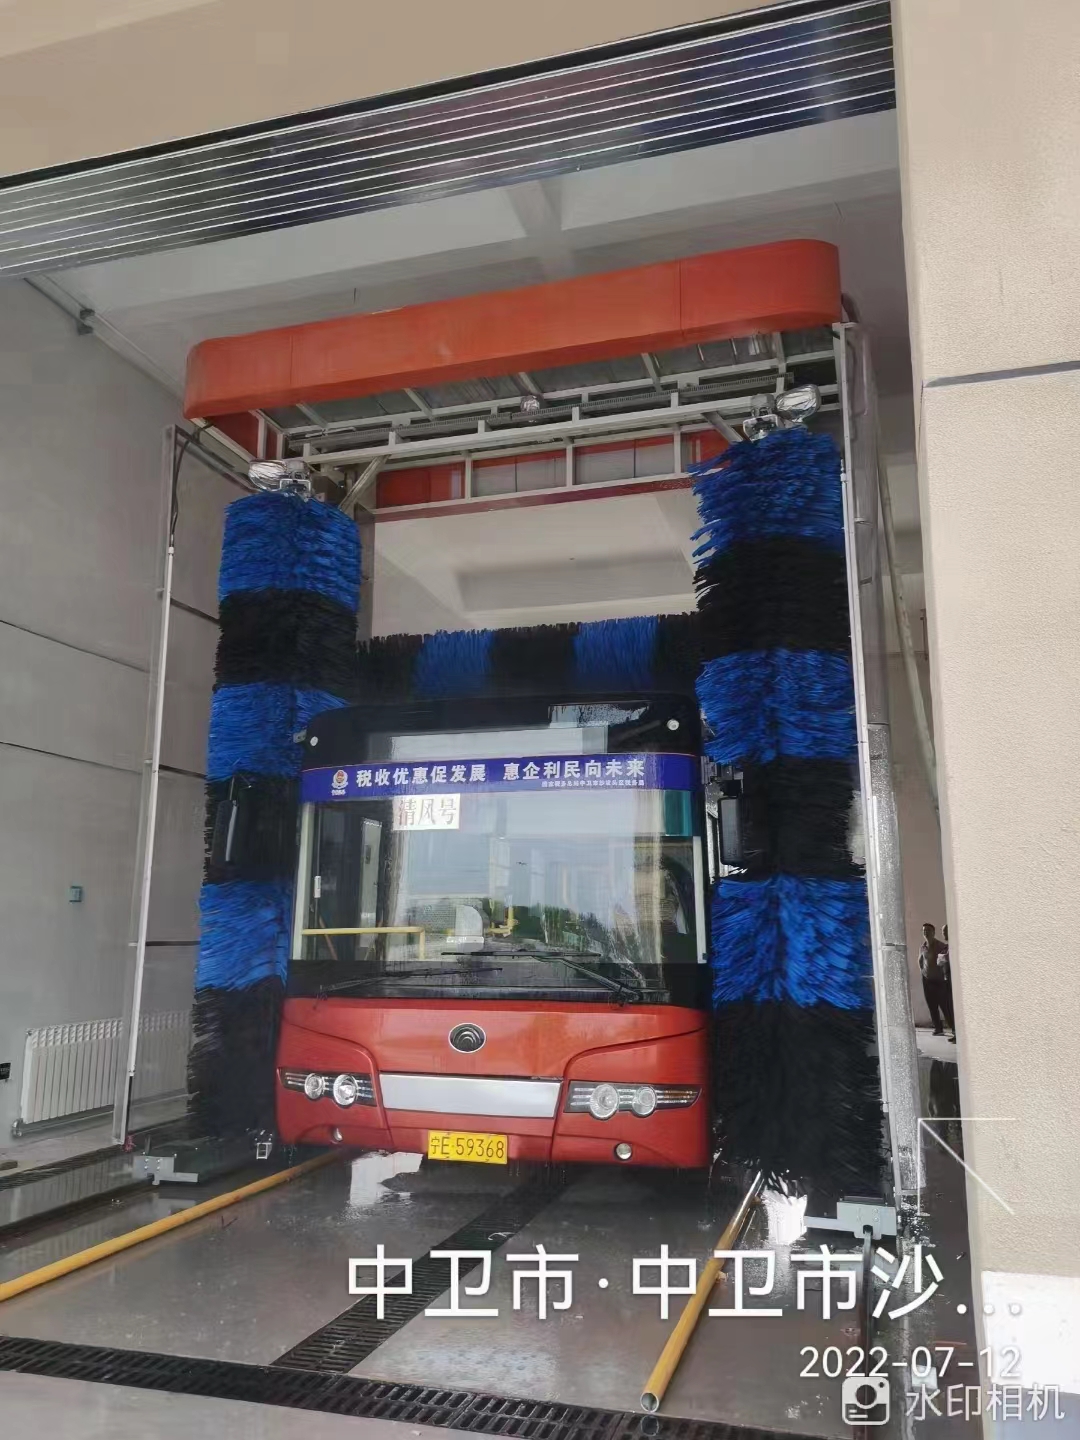 山東公交車清洗設備廠家支持定制包安裝至暄智能大巴洗車機